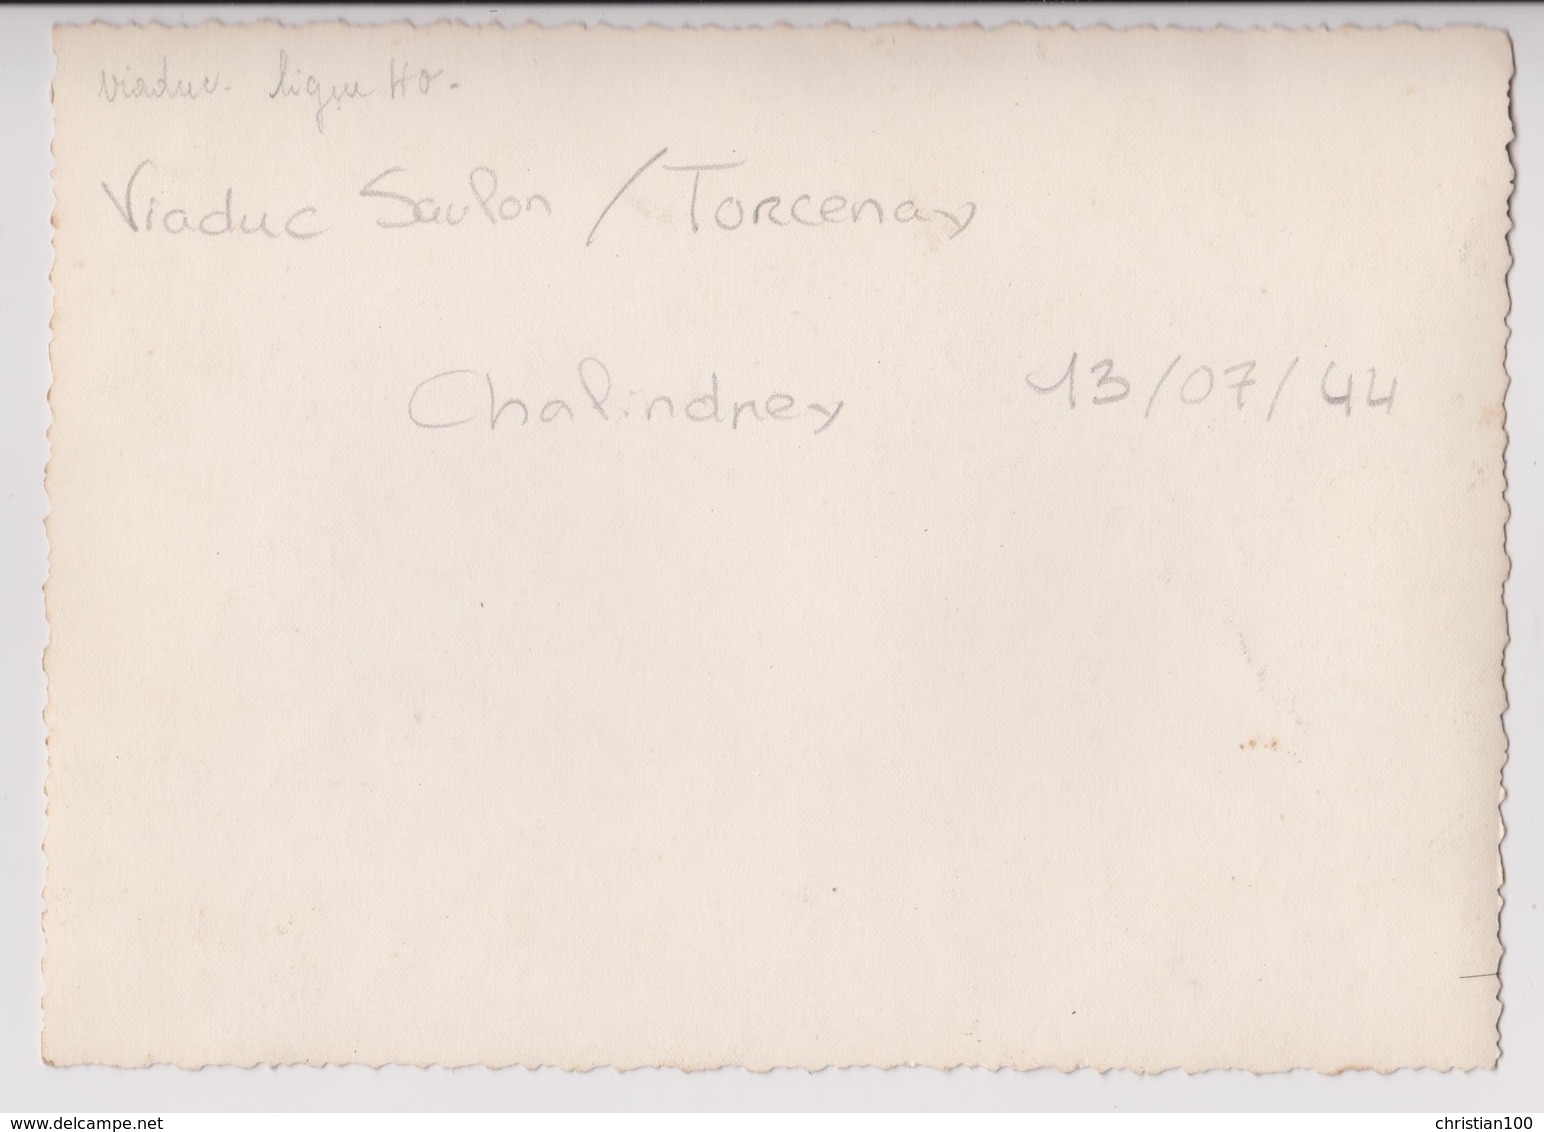 CHALINDREY (HAUTE MARNE) :  VIADUC DE TORCENAY BOMBARDE LE 13 JUILLET 1944 - PHOTO 17,5 CM X 12,5 CM - RARE - 4 SCANS - - Guerre, Militaire